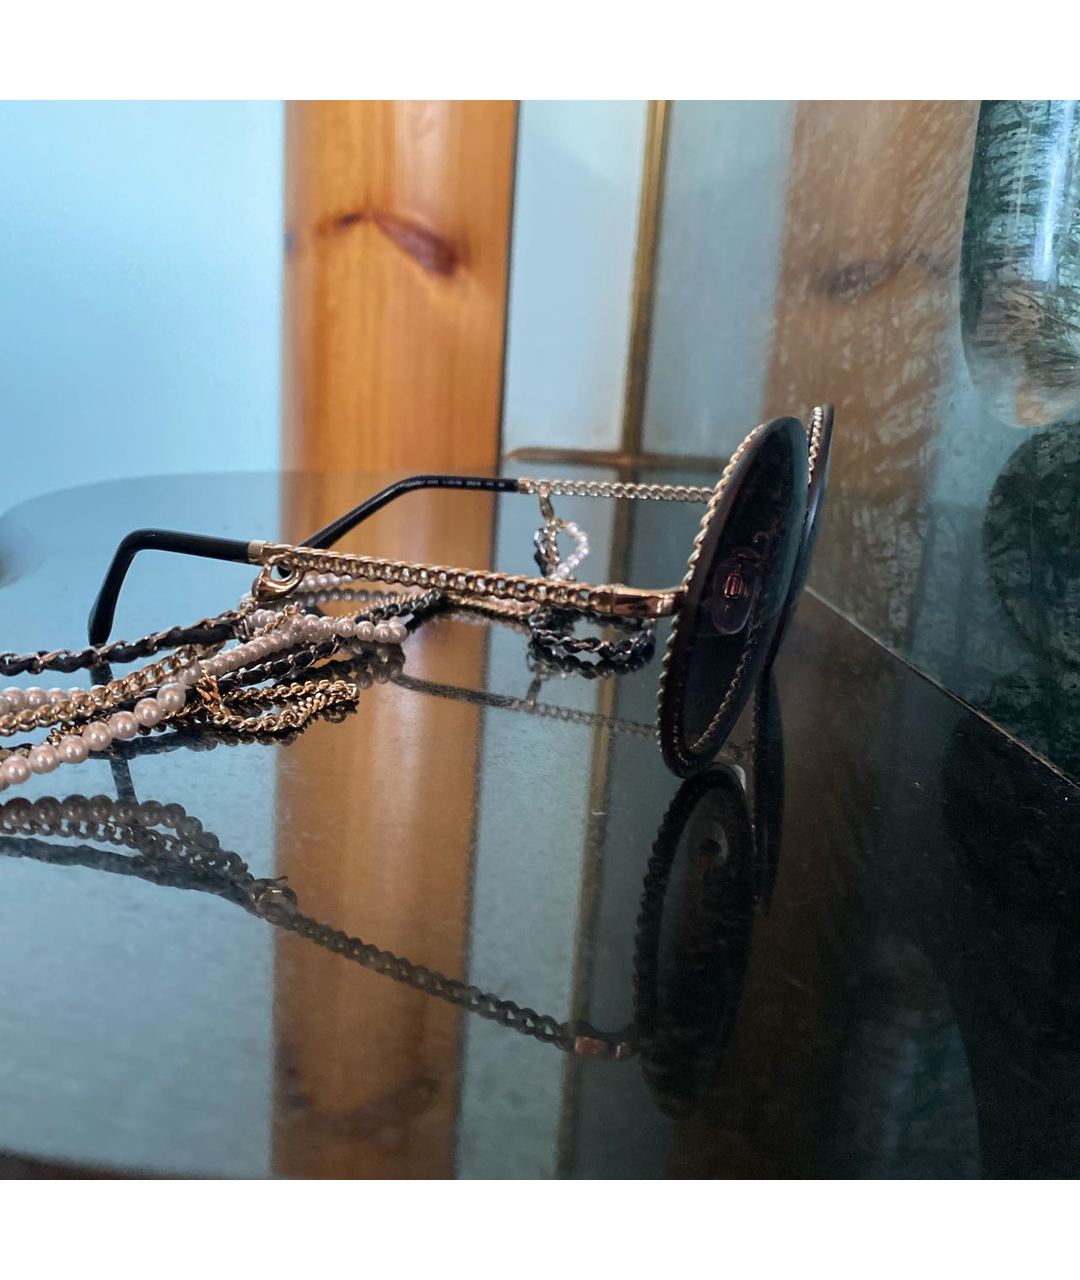 CHANEL PRE-OWNED Фиолетовые металлические солнцезащитные очки, фото 2